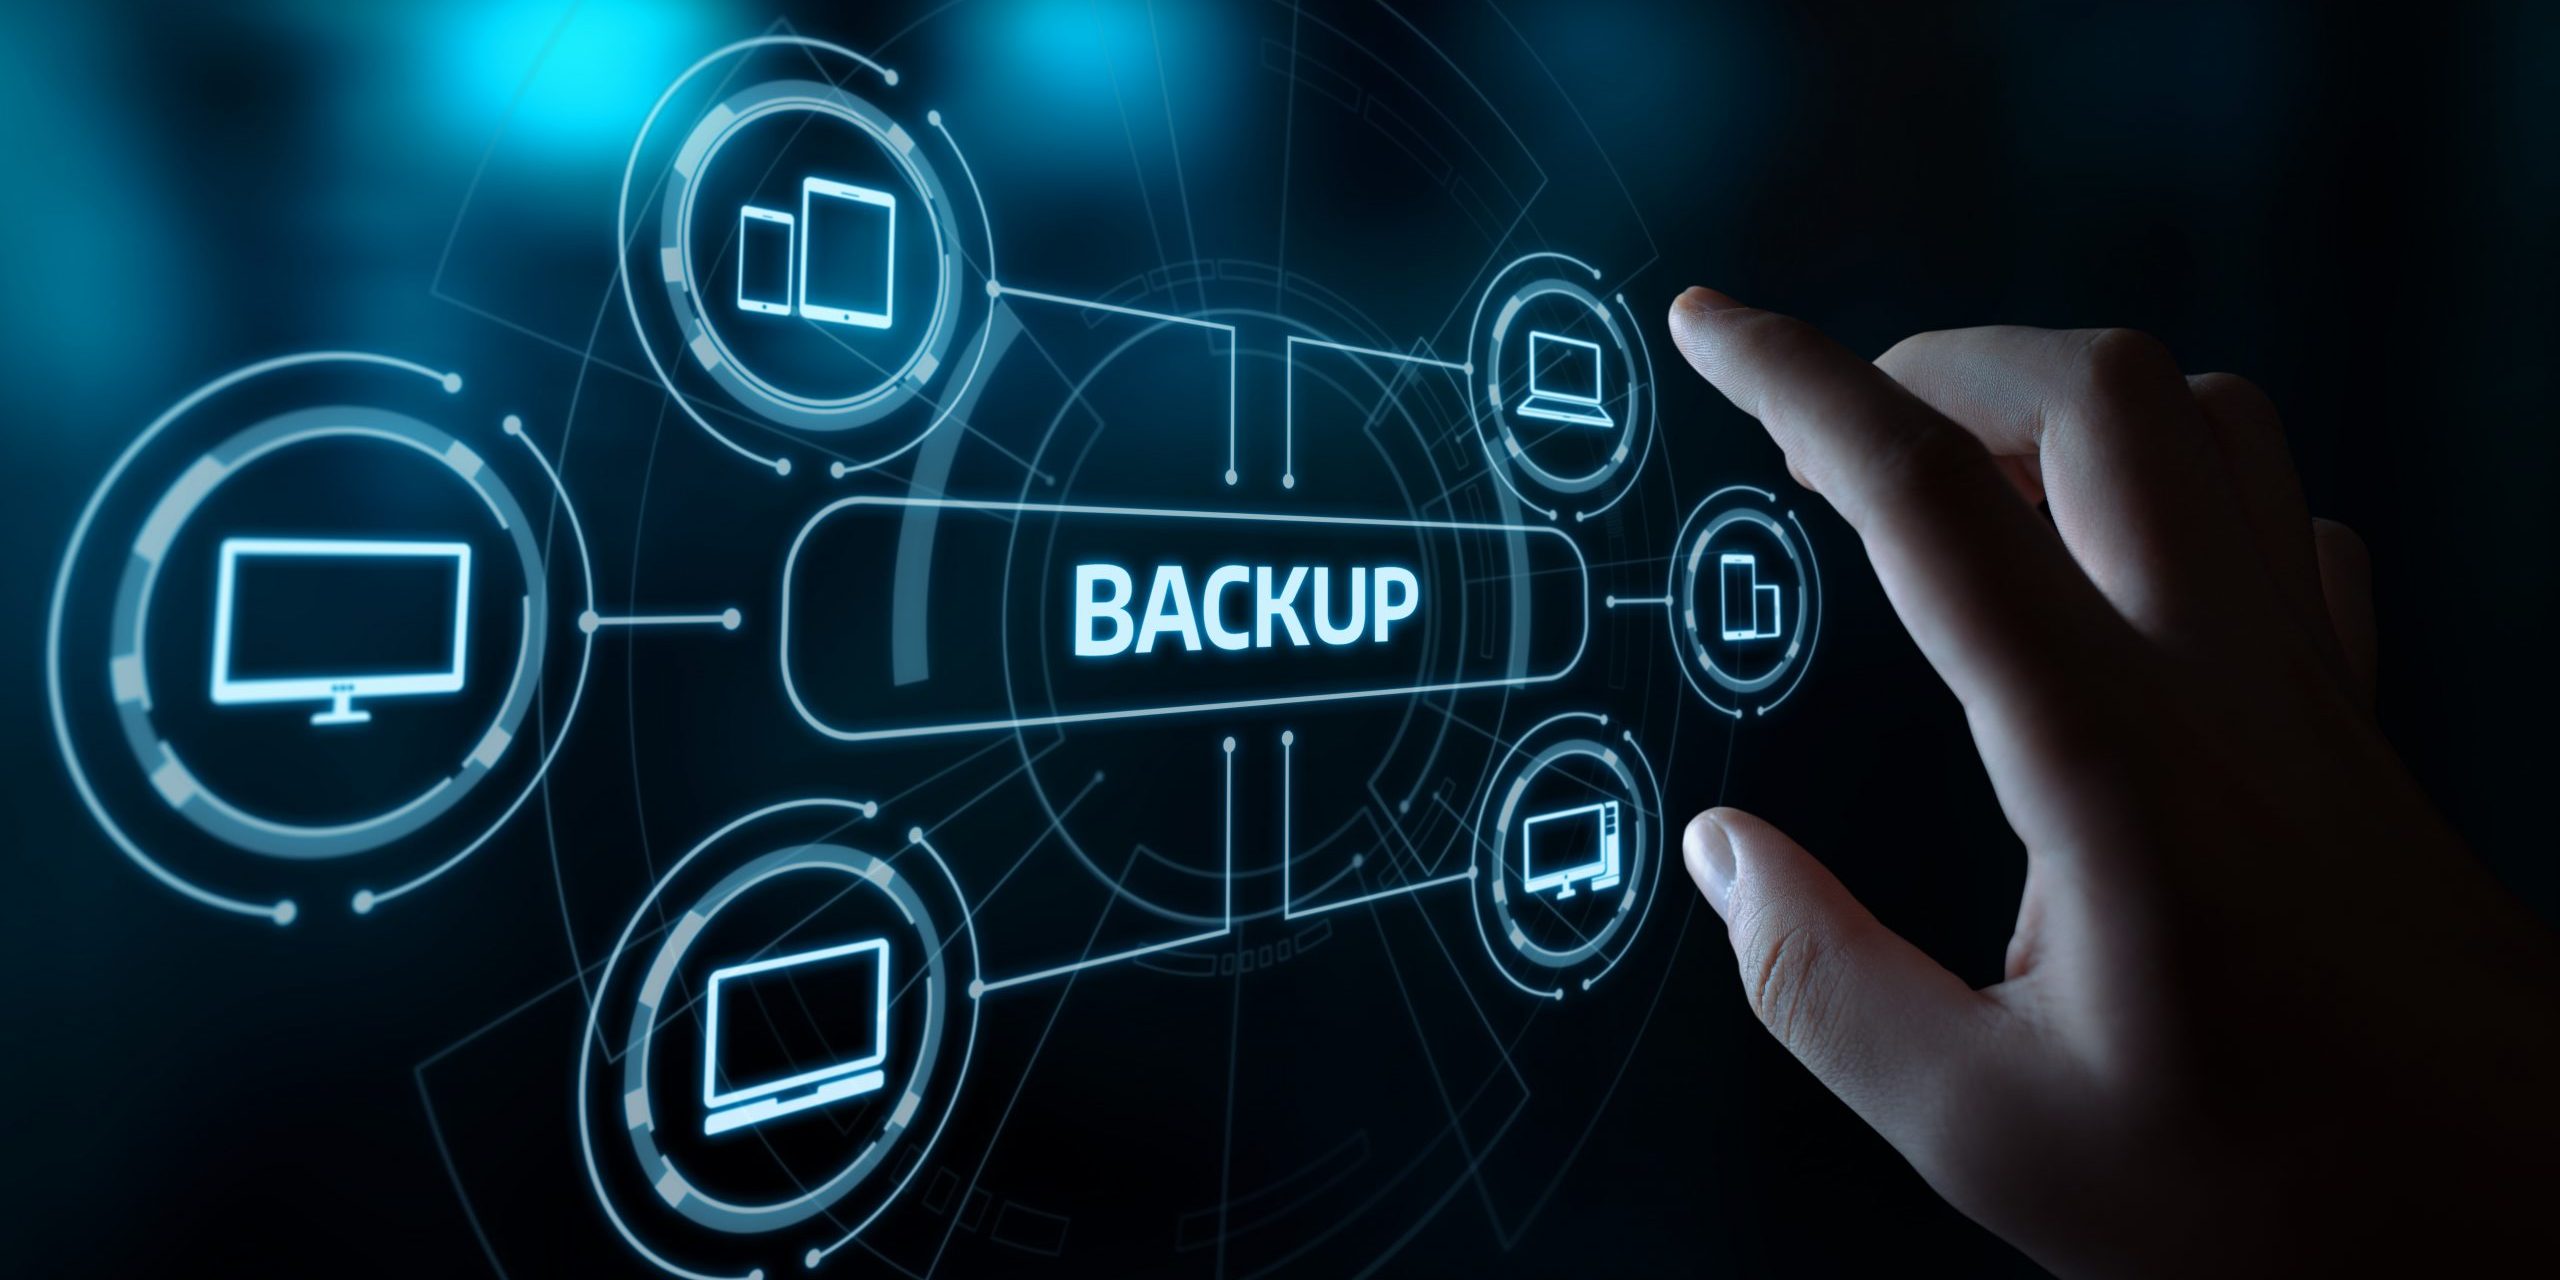 Backup - Recuperando os arquivos